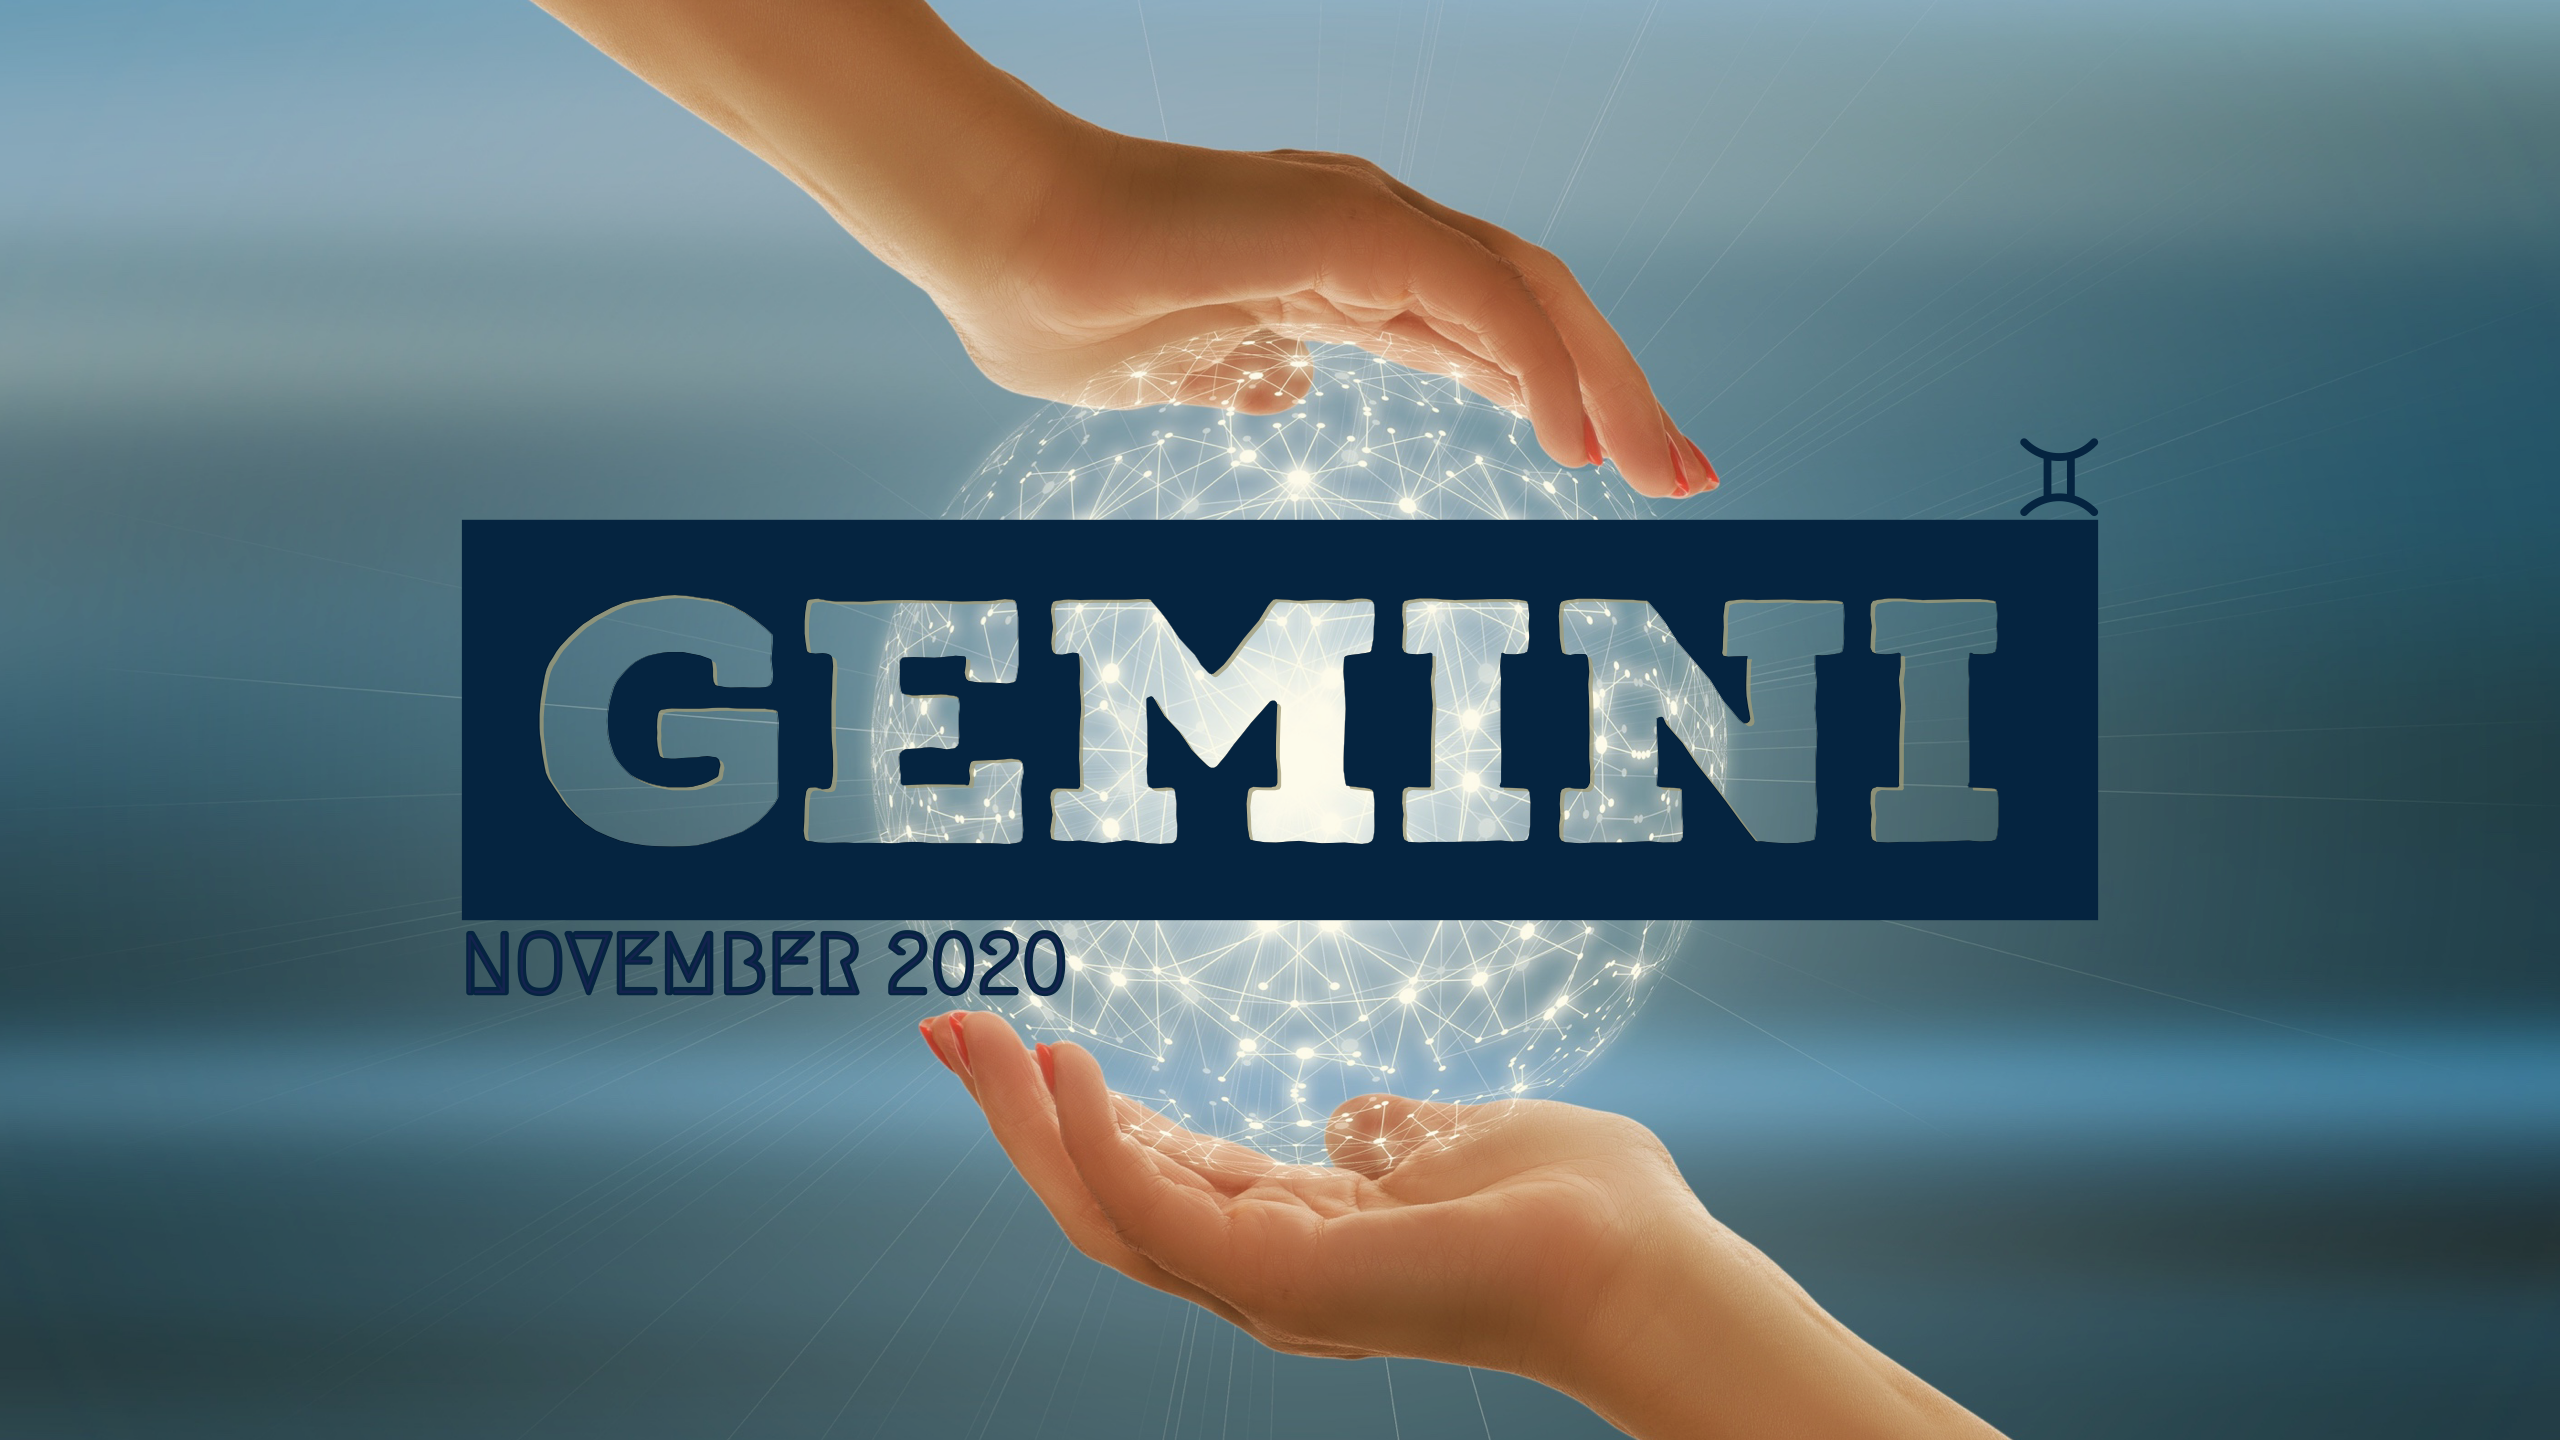 2020 11:Banner:03 Gemini